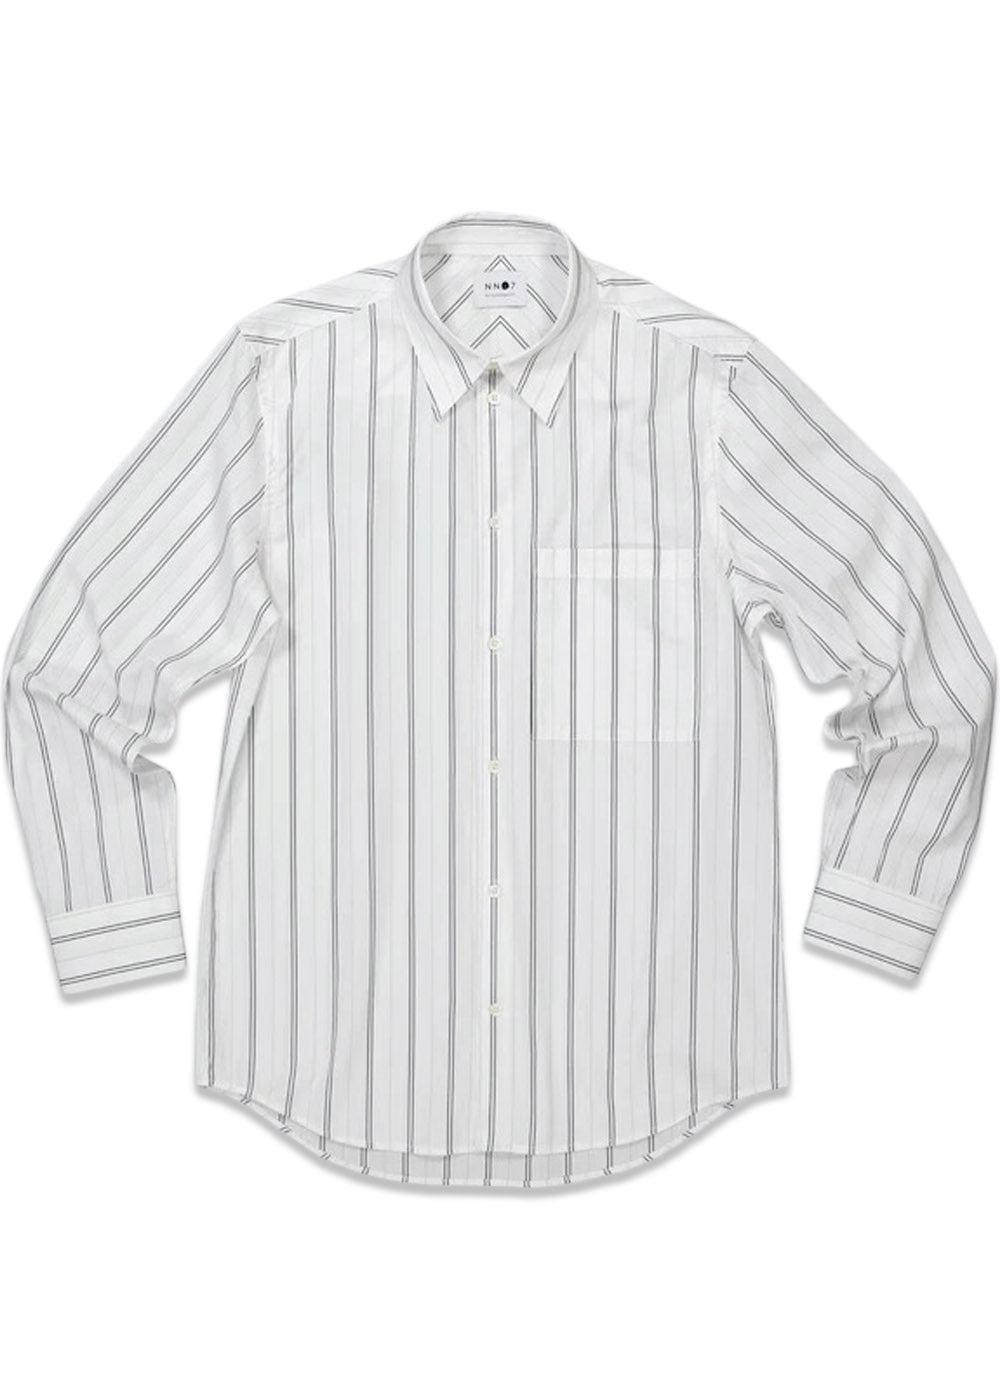 Nn. 07s Max Shirt 5287 - Navy Stripe. Køb shirts her.